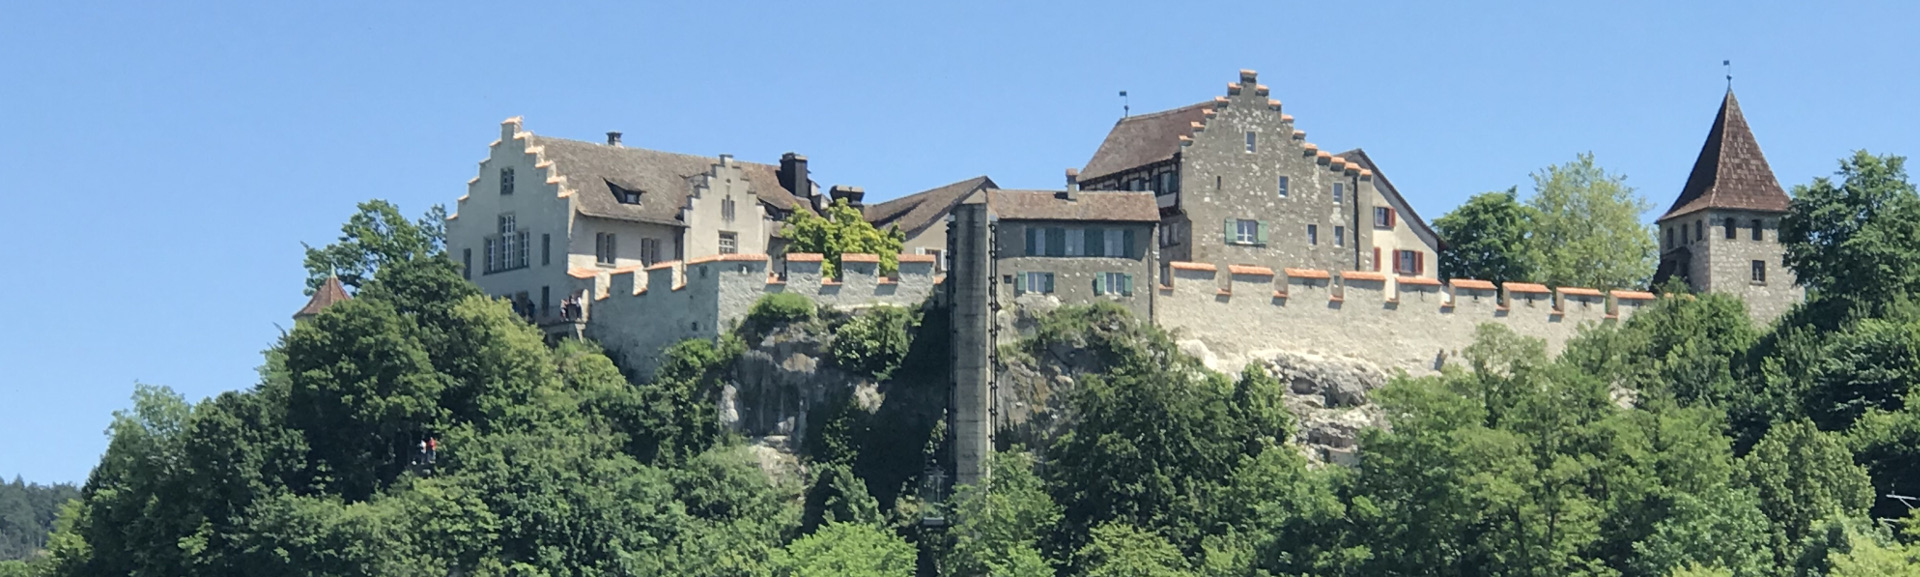 Bild Burg Schaffhausen